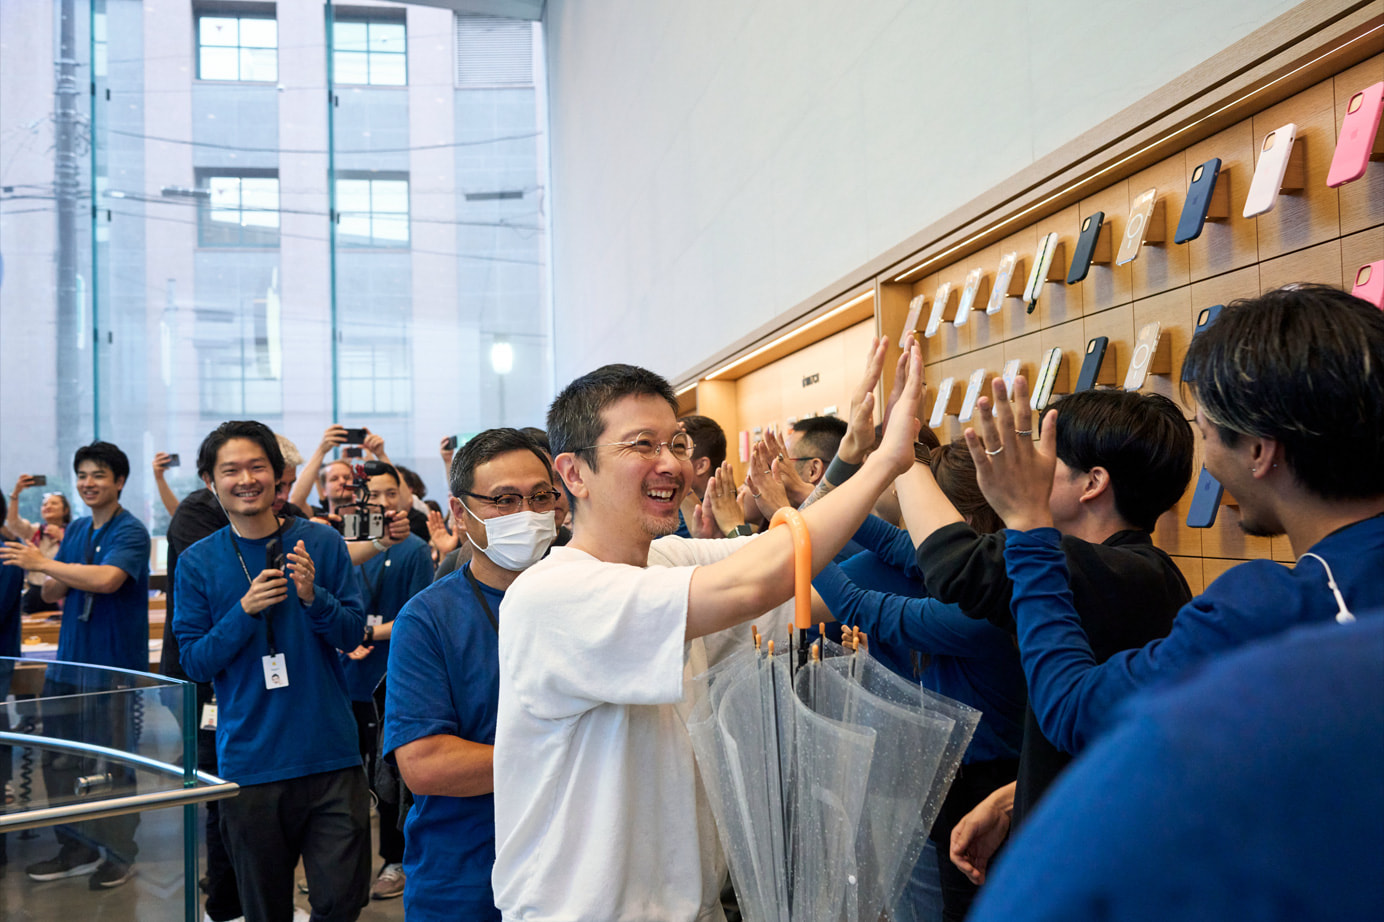 Tại Apple Store ở Omotesando, Tokyo, hàng trăm người cũng đến trải nghiệm và mua sắm khi Vision Pro được bán ra. Các nhân viên xếp hàng dài chào mừng khách hàng.